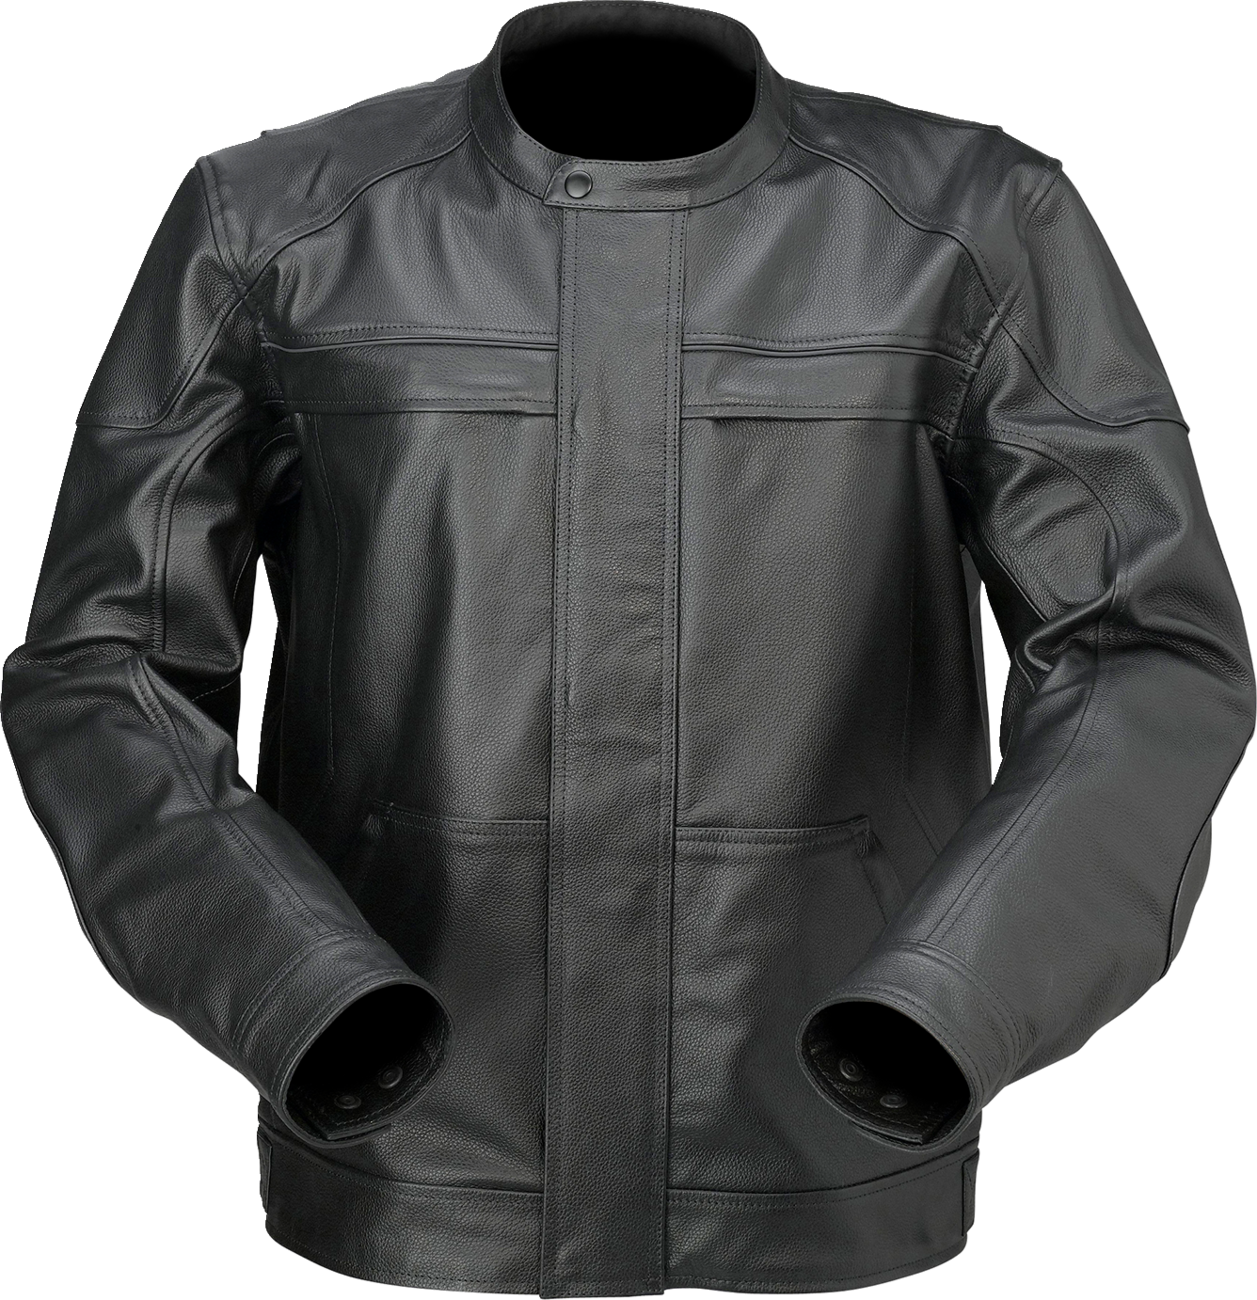 Z1R Justifier Leather Jacket - Black - 3XL 2810-3917